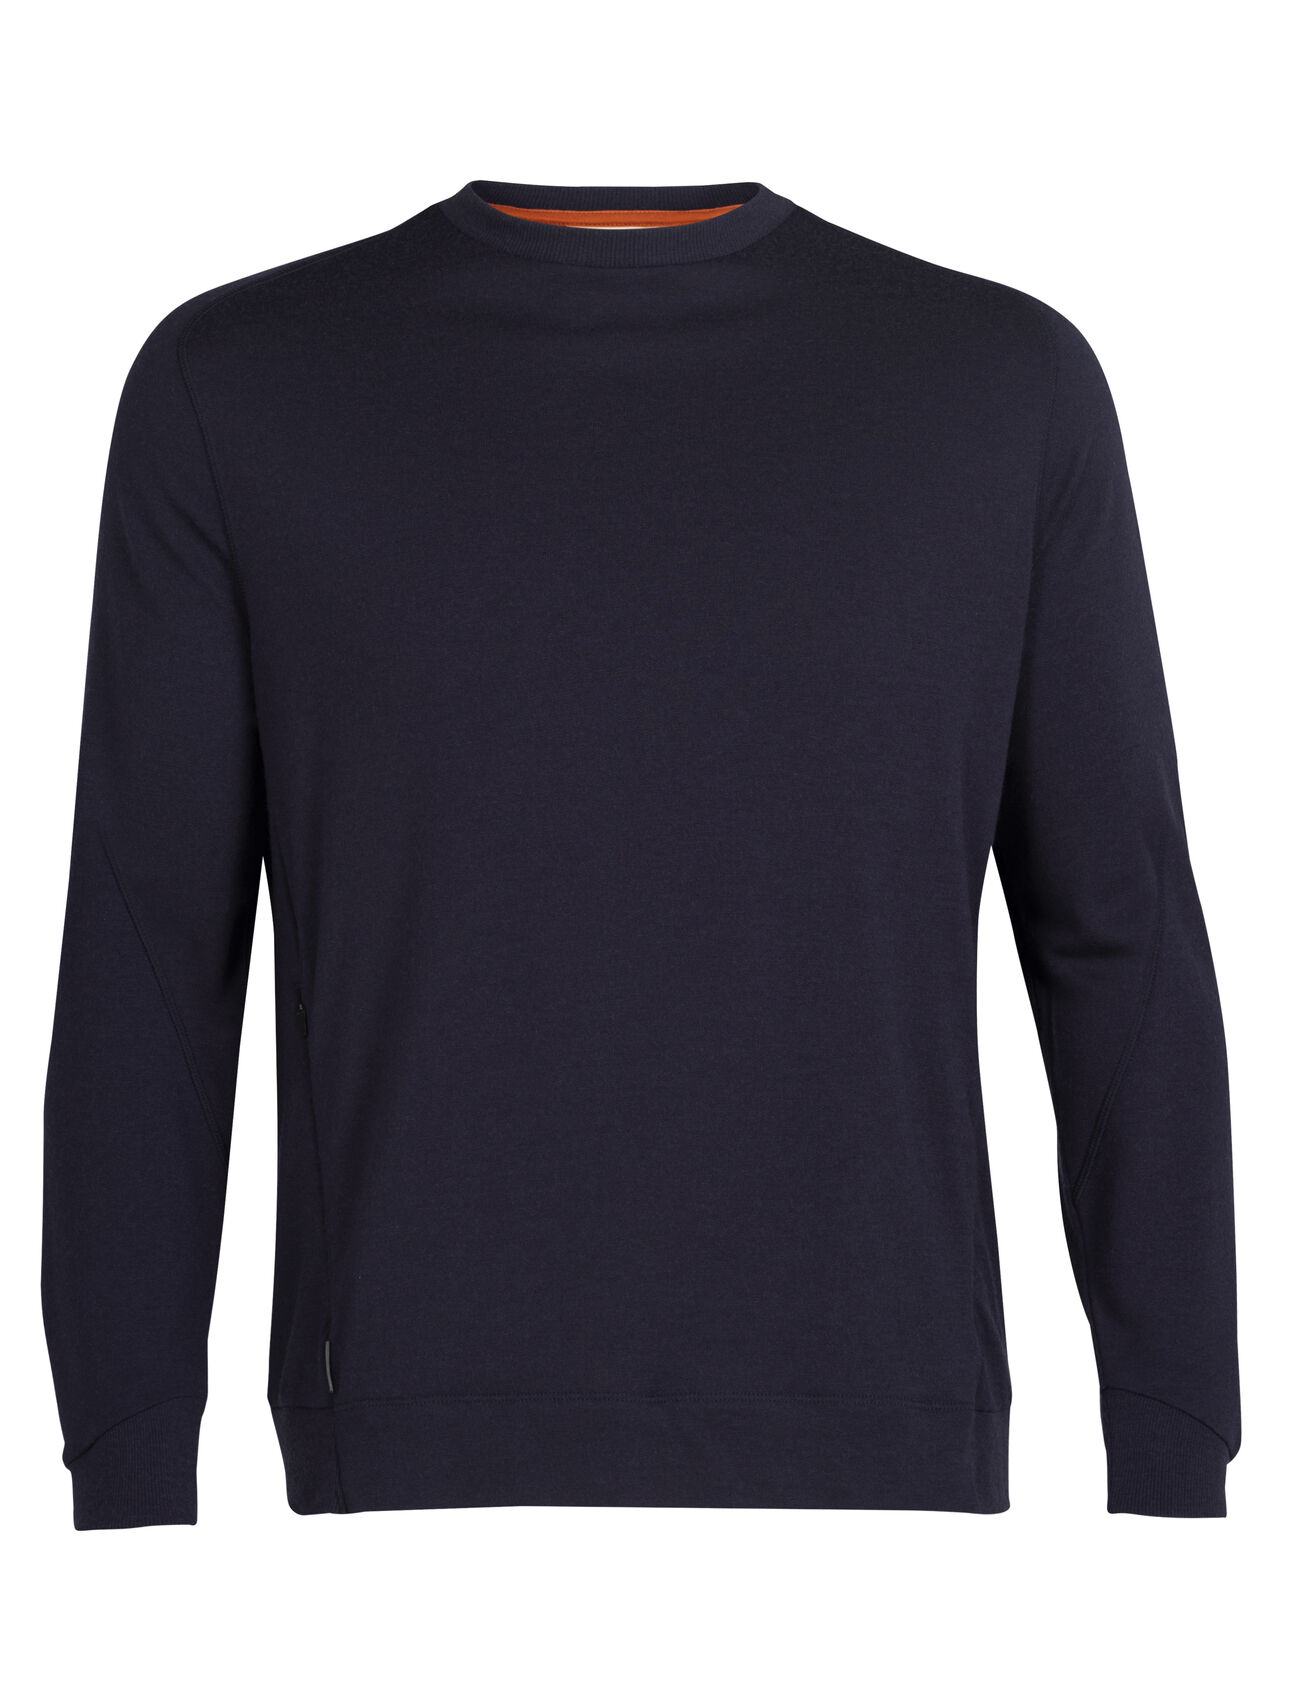 Sweatshirt mérinos Homme Haut classique à col rond composé d’un tissu éponge en laine 100 % mérinos, le sweatshirt mérinos allie confort et modernité.